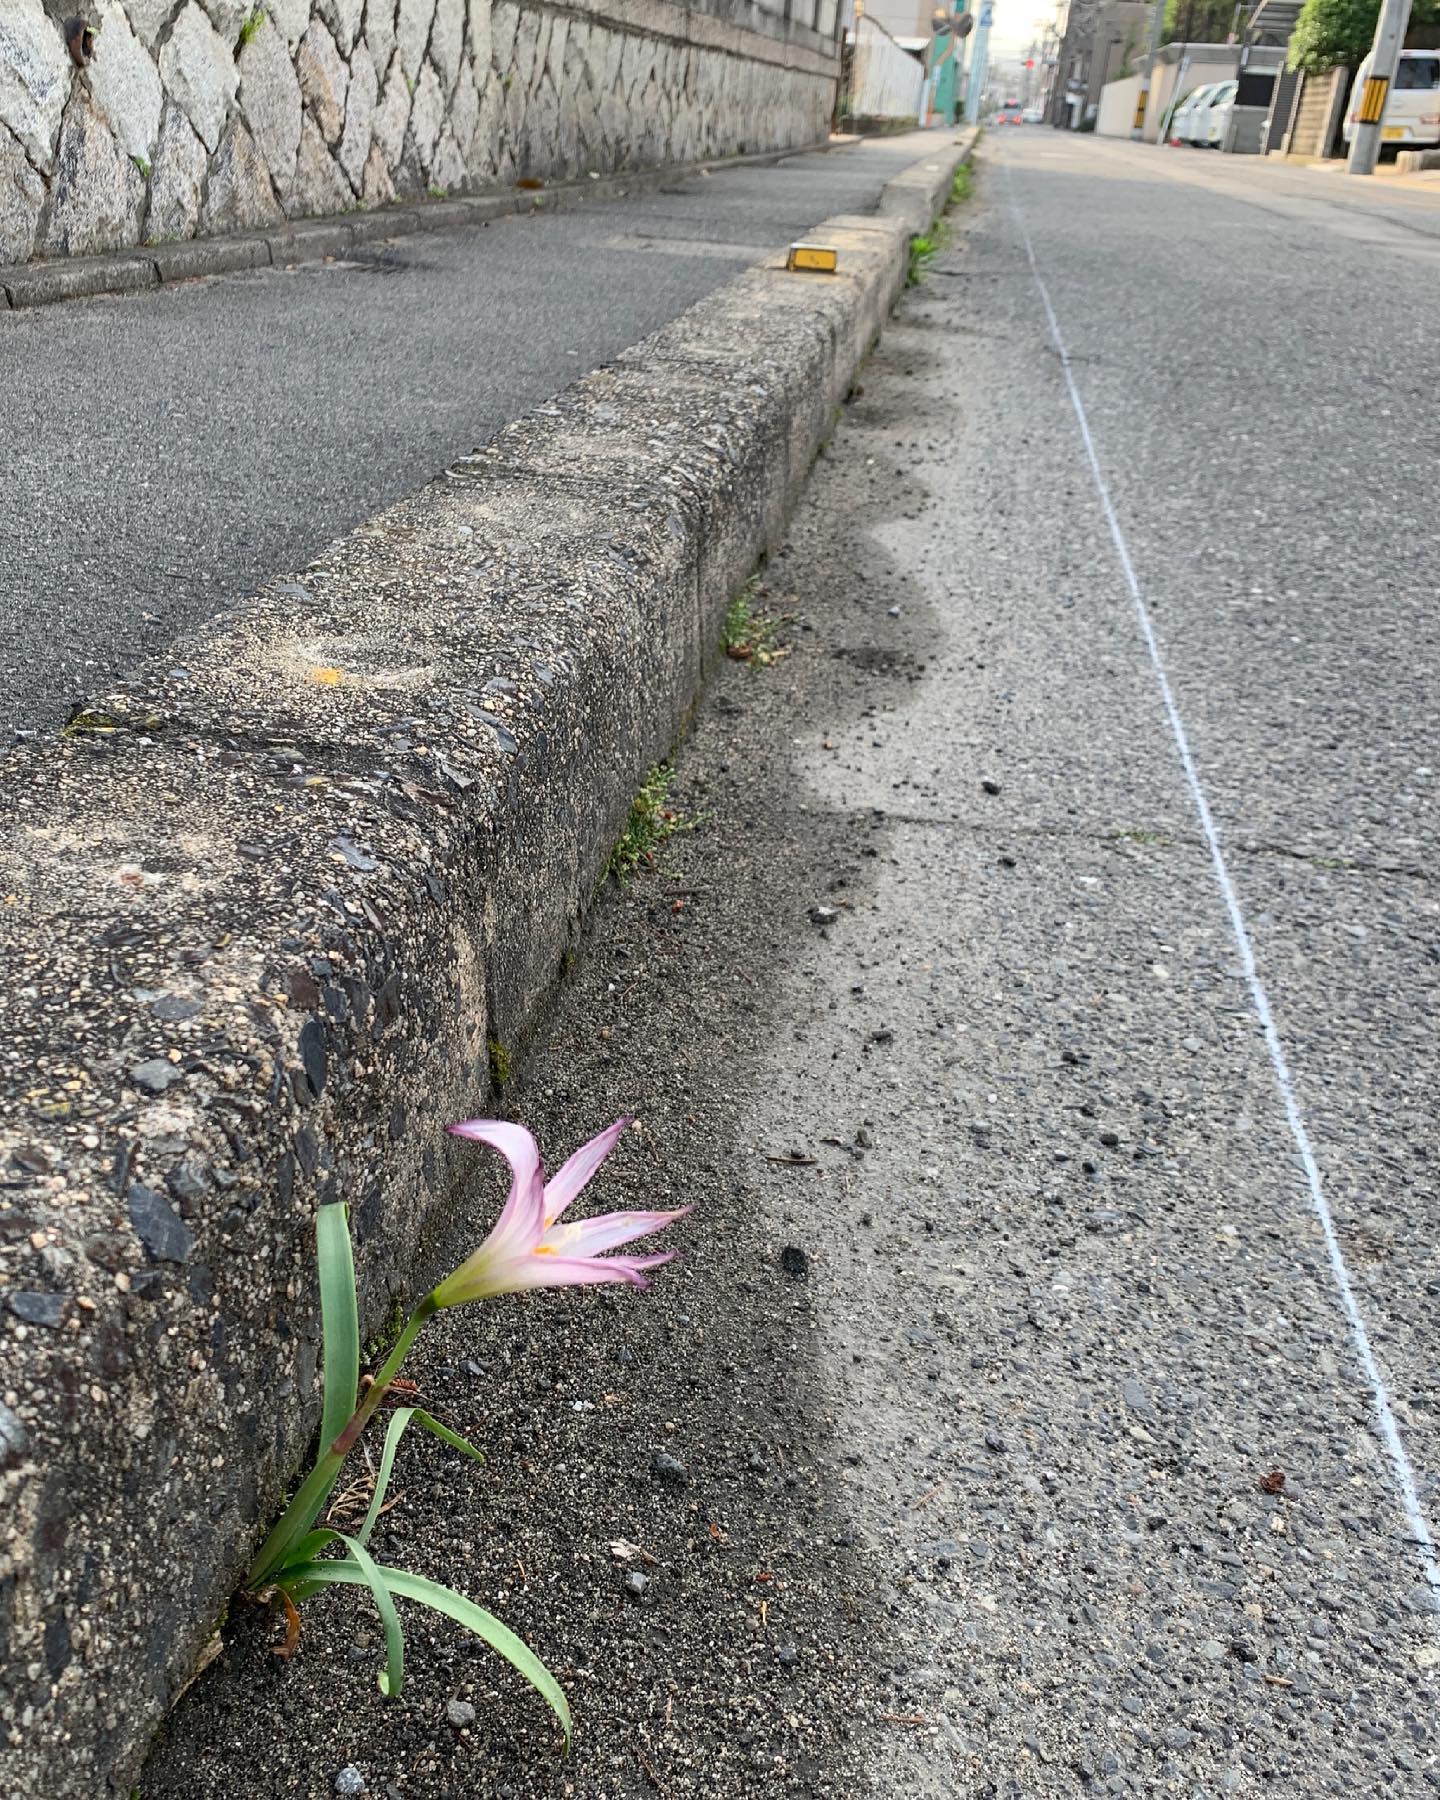 朝ラン。5km。咲く花に勇気づけられる。#朝ラン #花咲く旅路